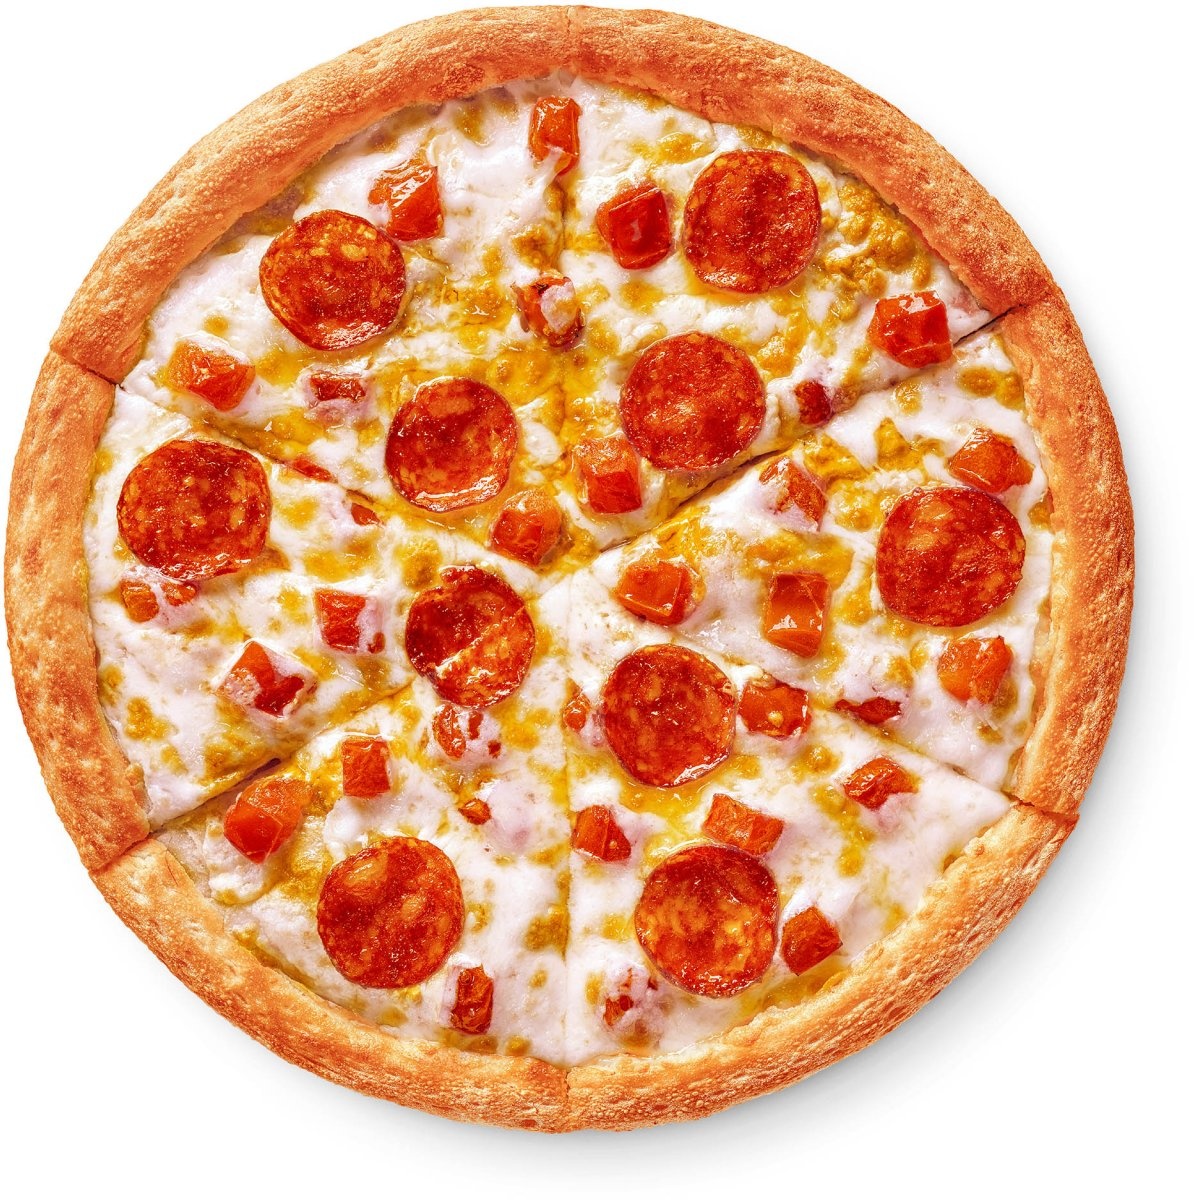 состав пепперони додо пицца фото 103